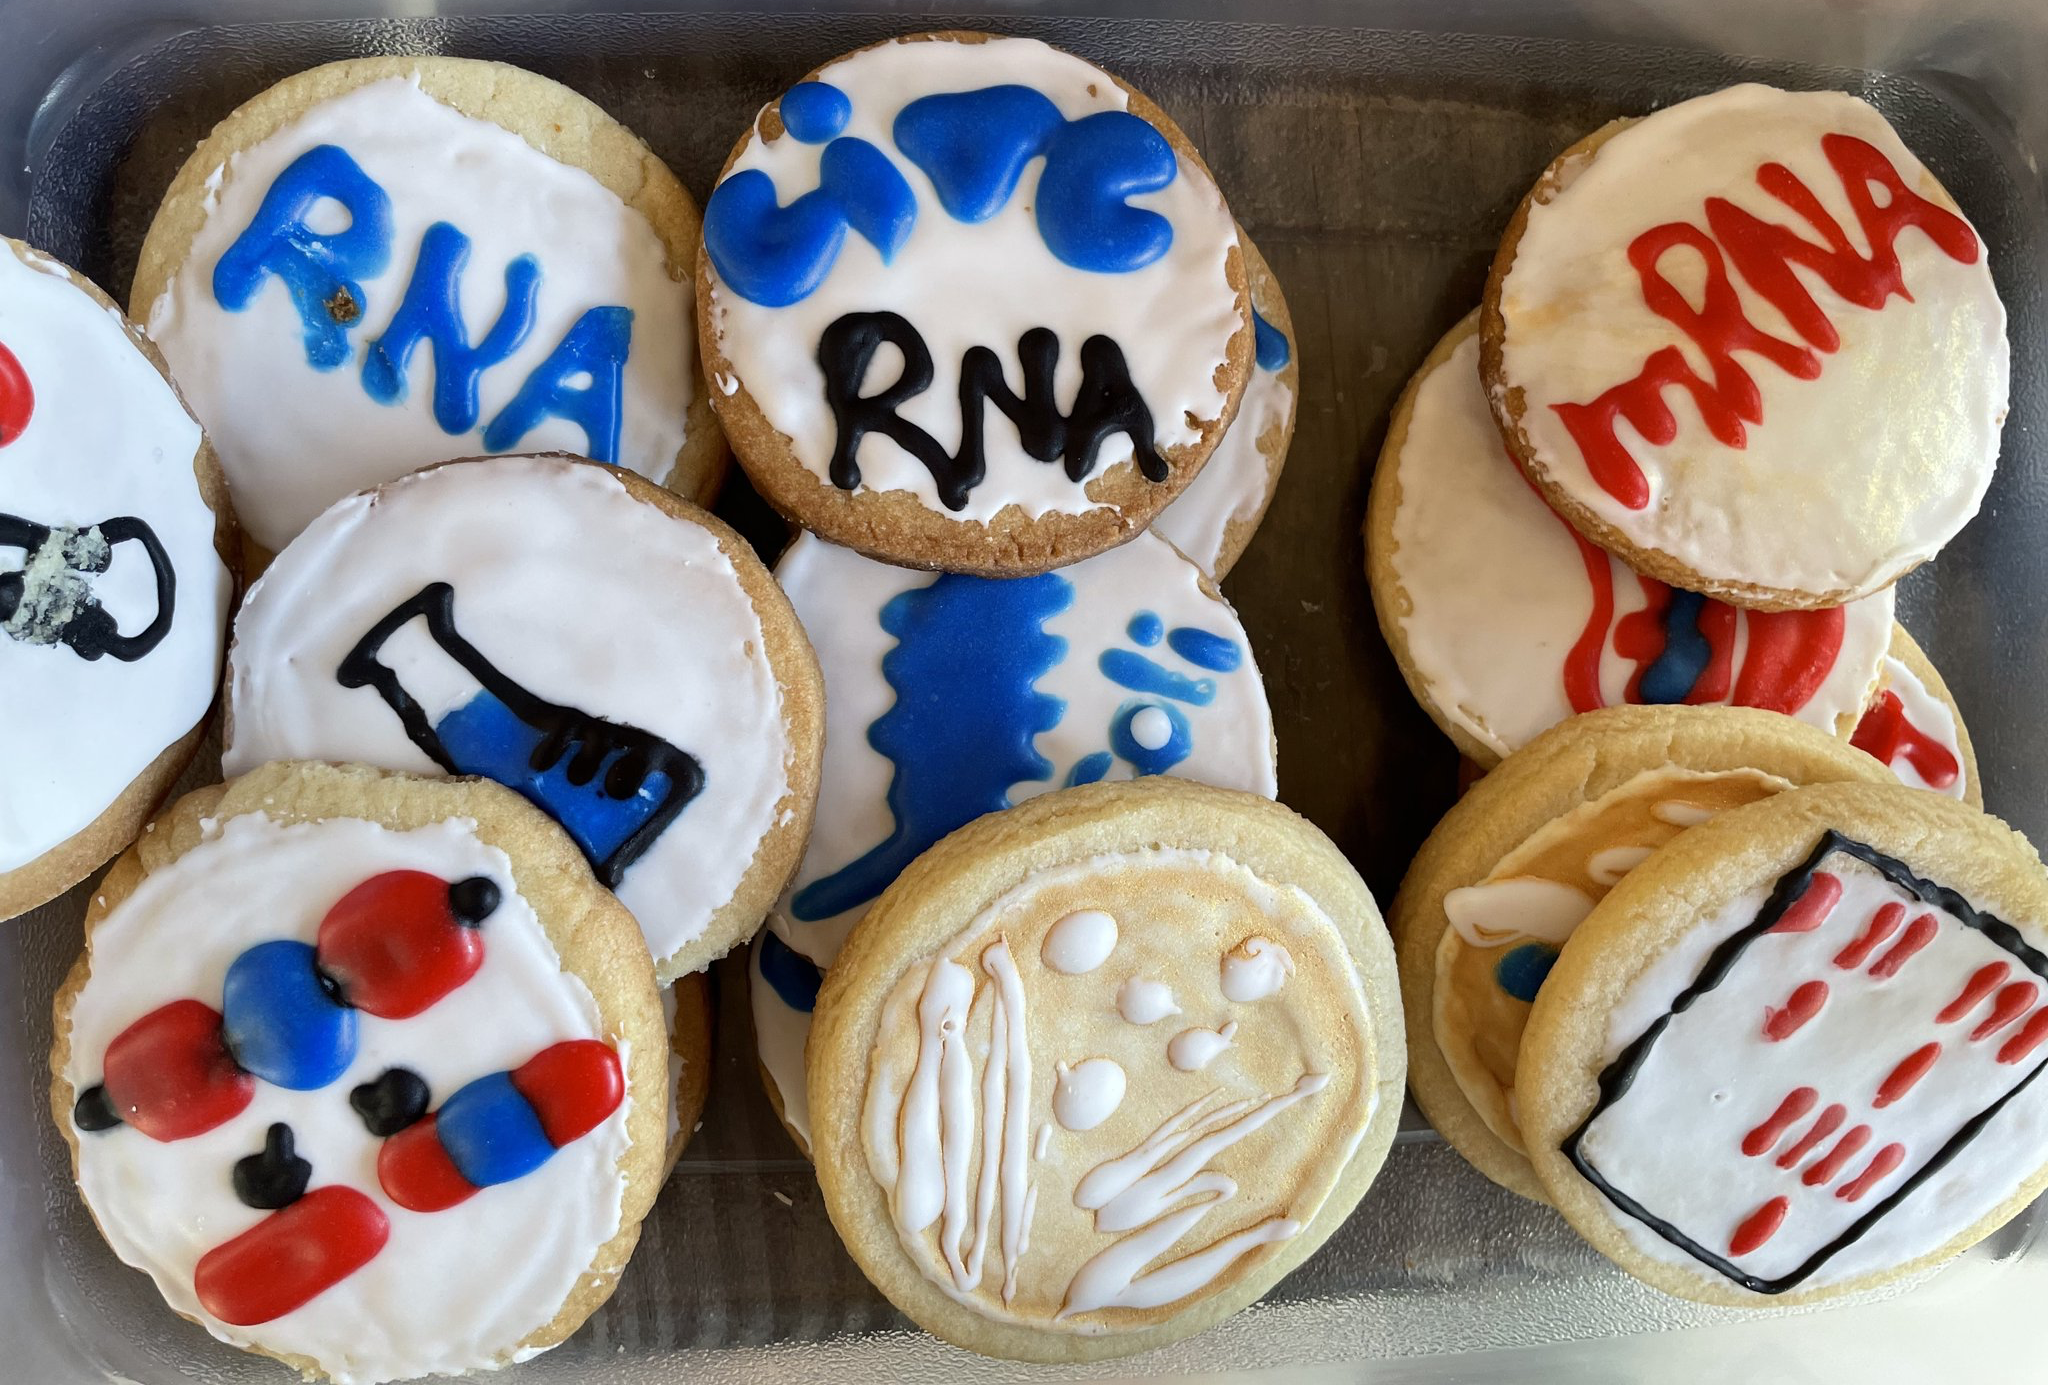 RNA cookies